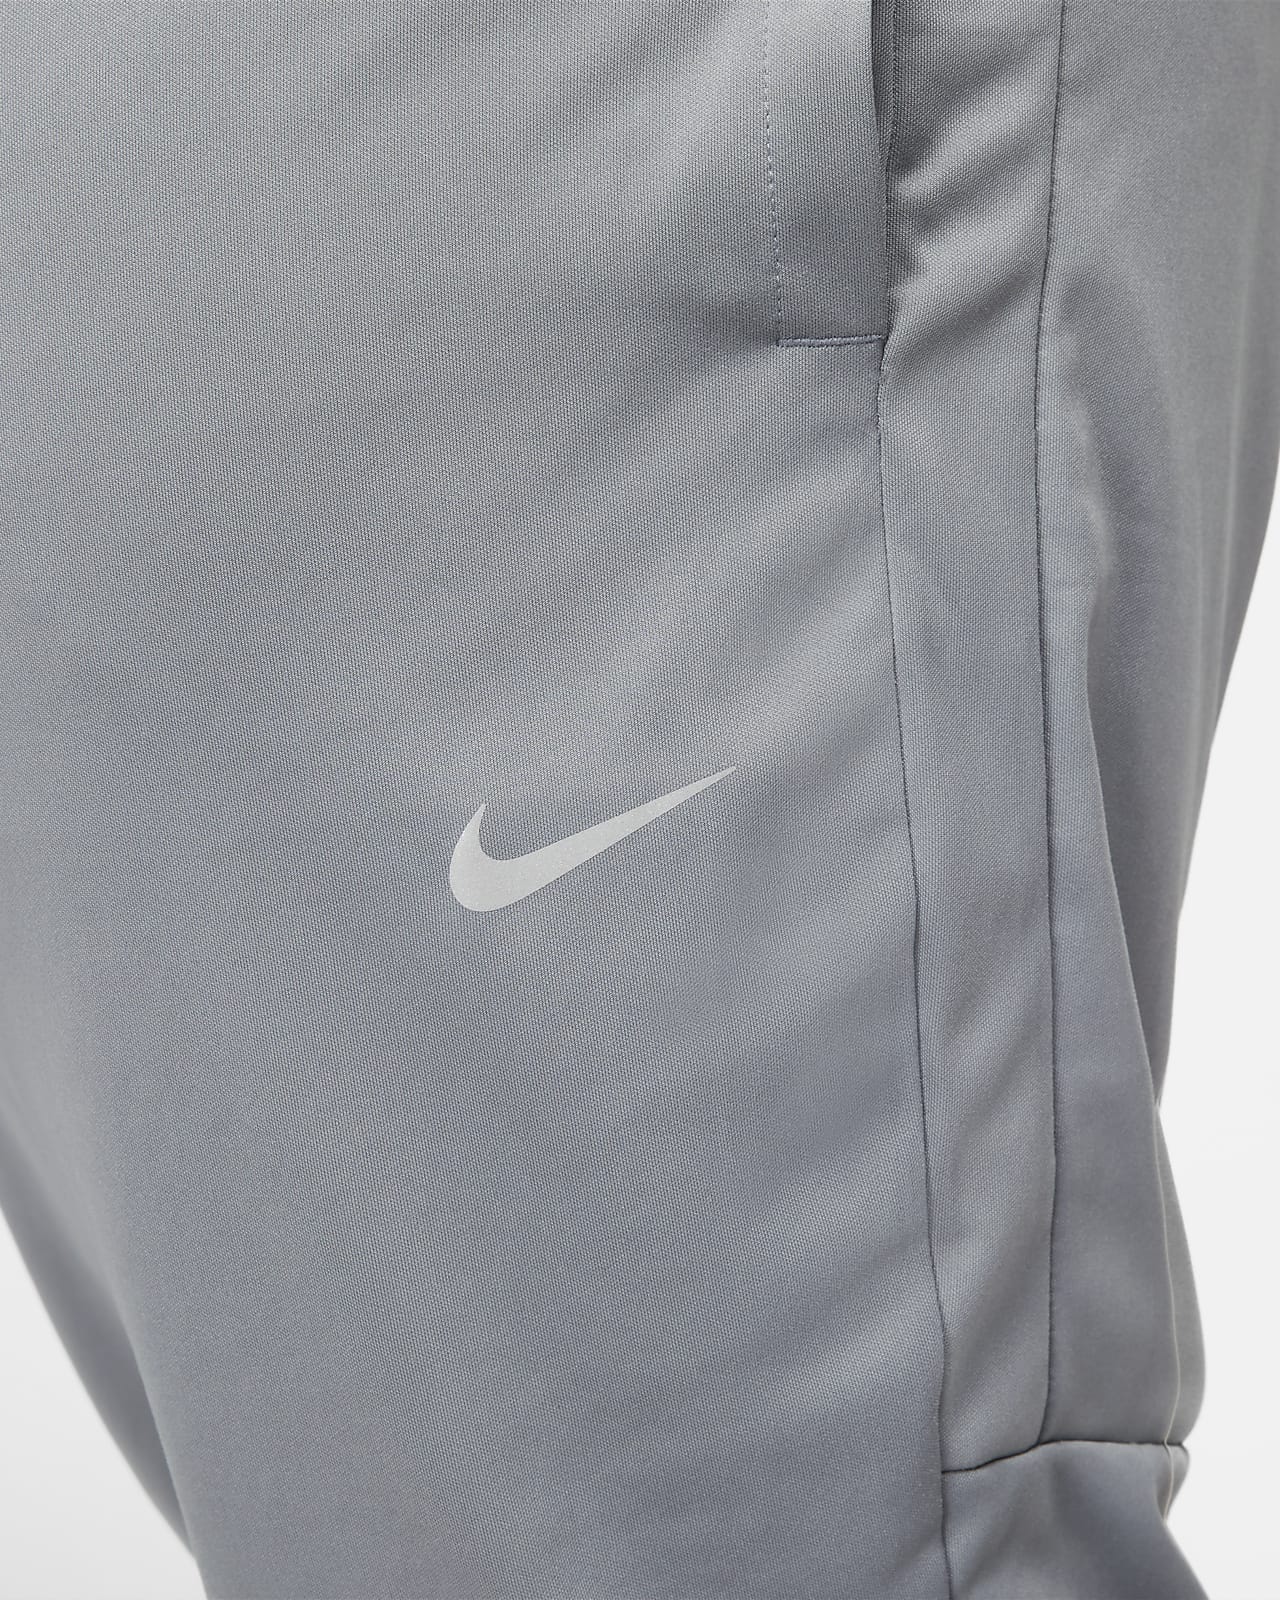 Nike Dri-FIT Challenger Knit hardloopbroek voor Nike BE